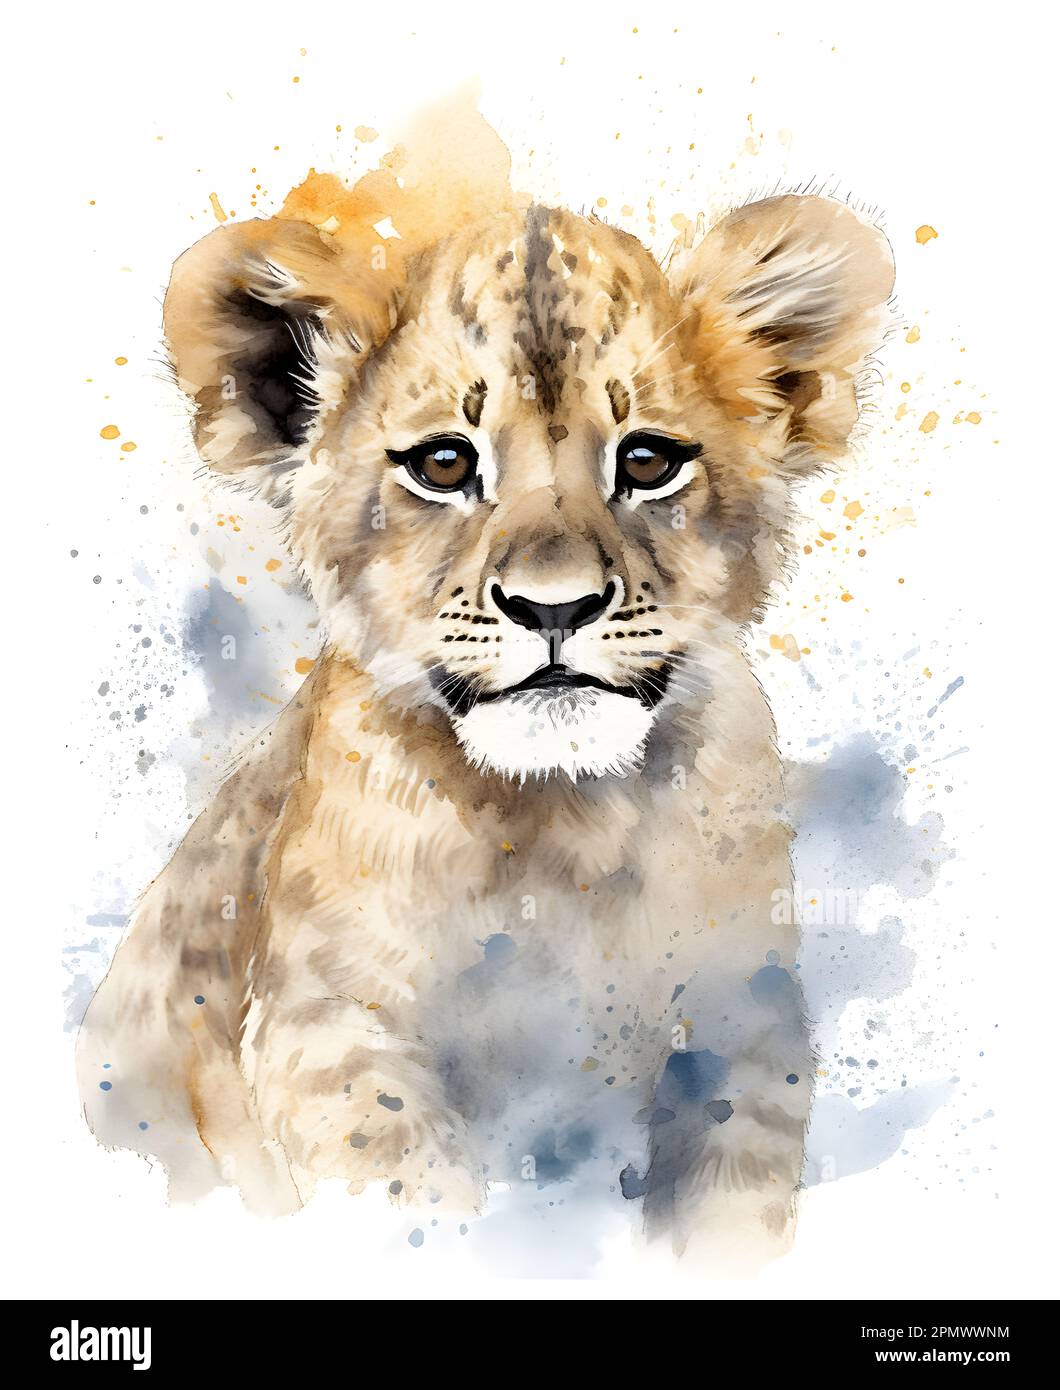 Süßes Löwenjunges in Aquarellfarben. Poster für Kinder mit lustigen und glücklichen Tieren. Stockfoto